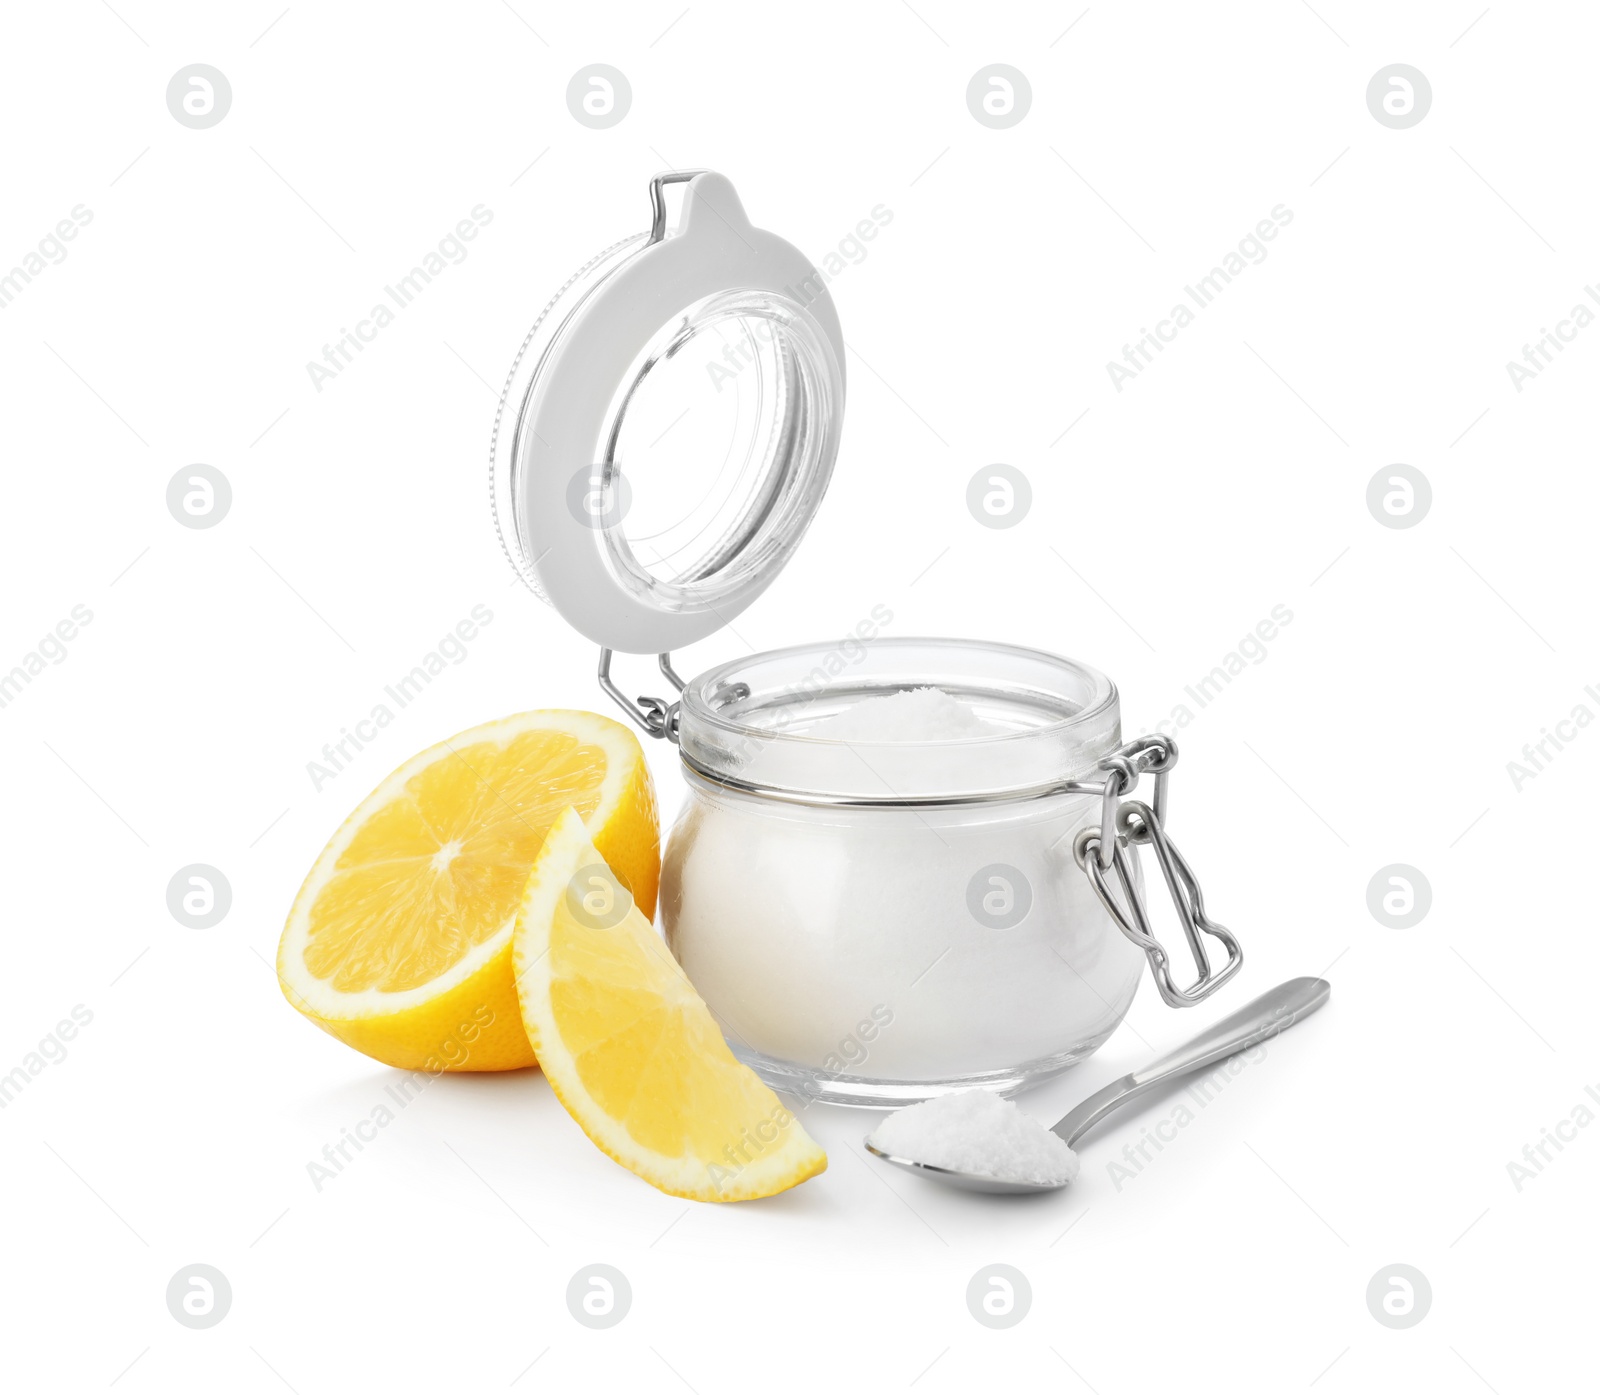 Photo of Baking soda and cut lemon on white background